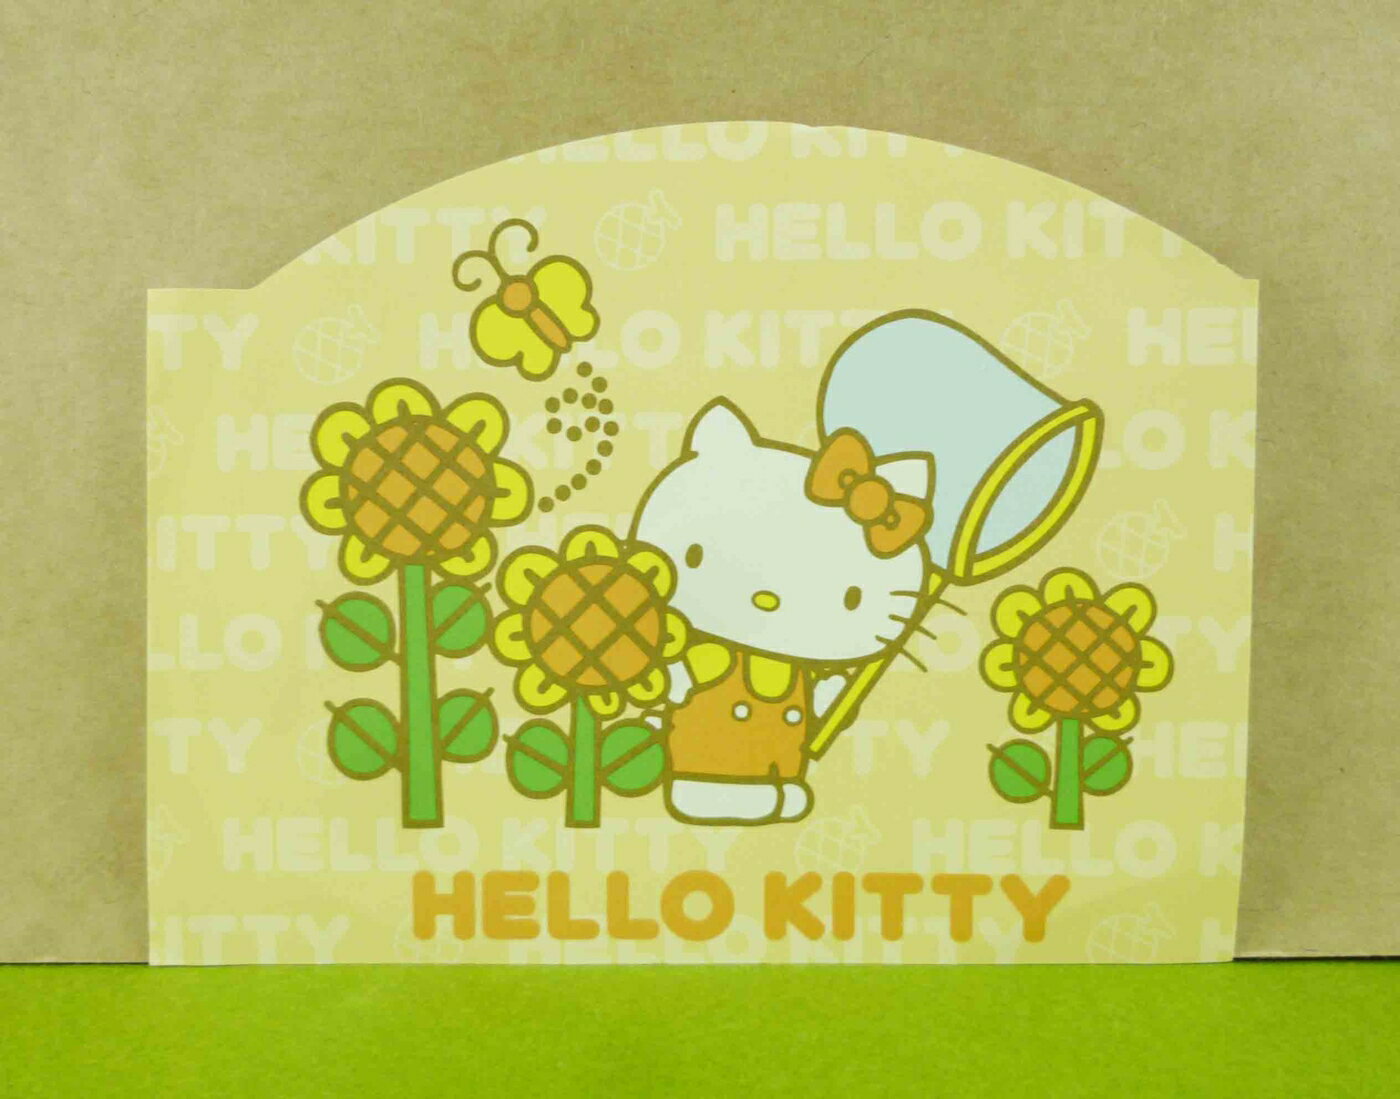 【震撼精品百貨】Hello Kitty 凱蒂貓 造型卡片-黃太陽花 震撼日式精品百貨